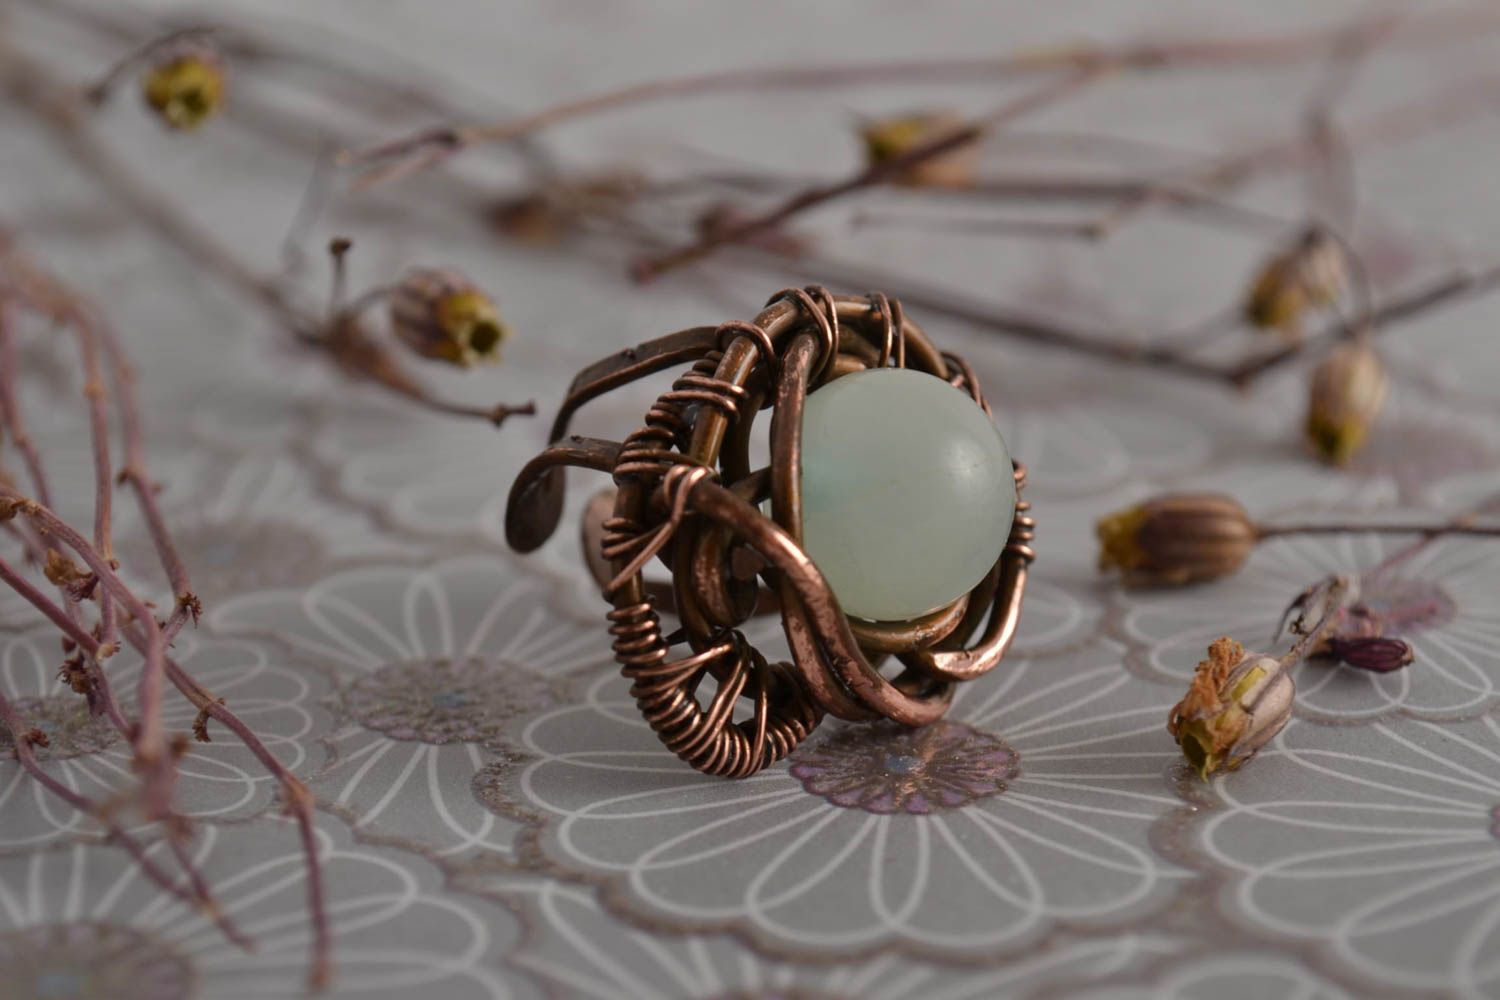 Красивое кольцо хэнд мэйд украшение в технике wire wrap медное кольцо Аквамарин фото 1